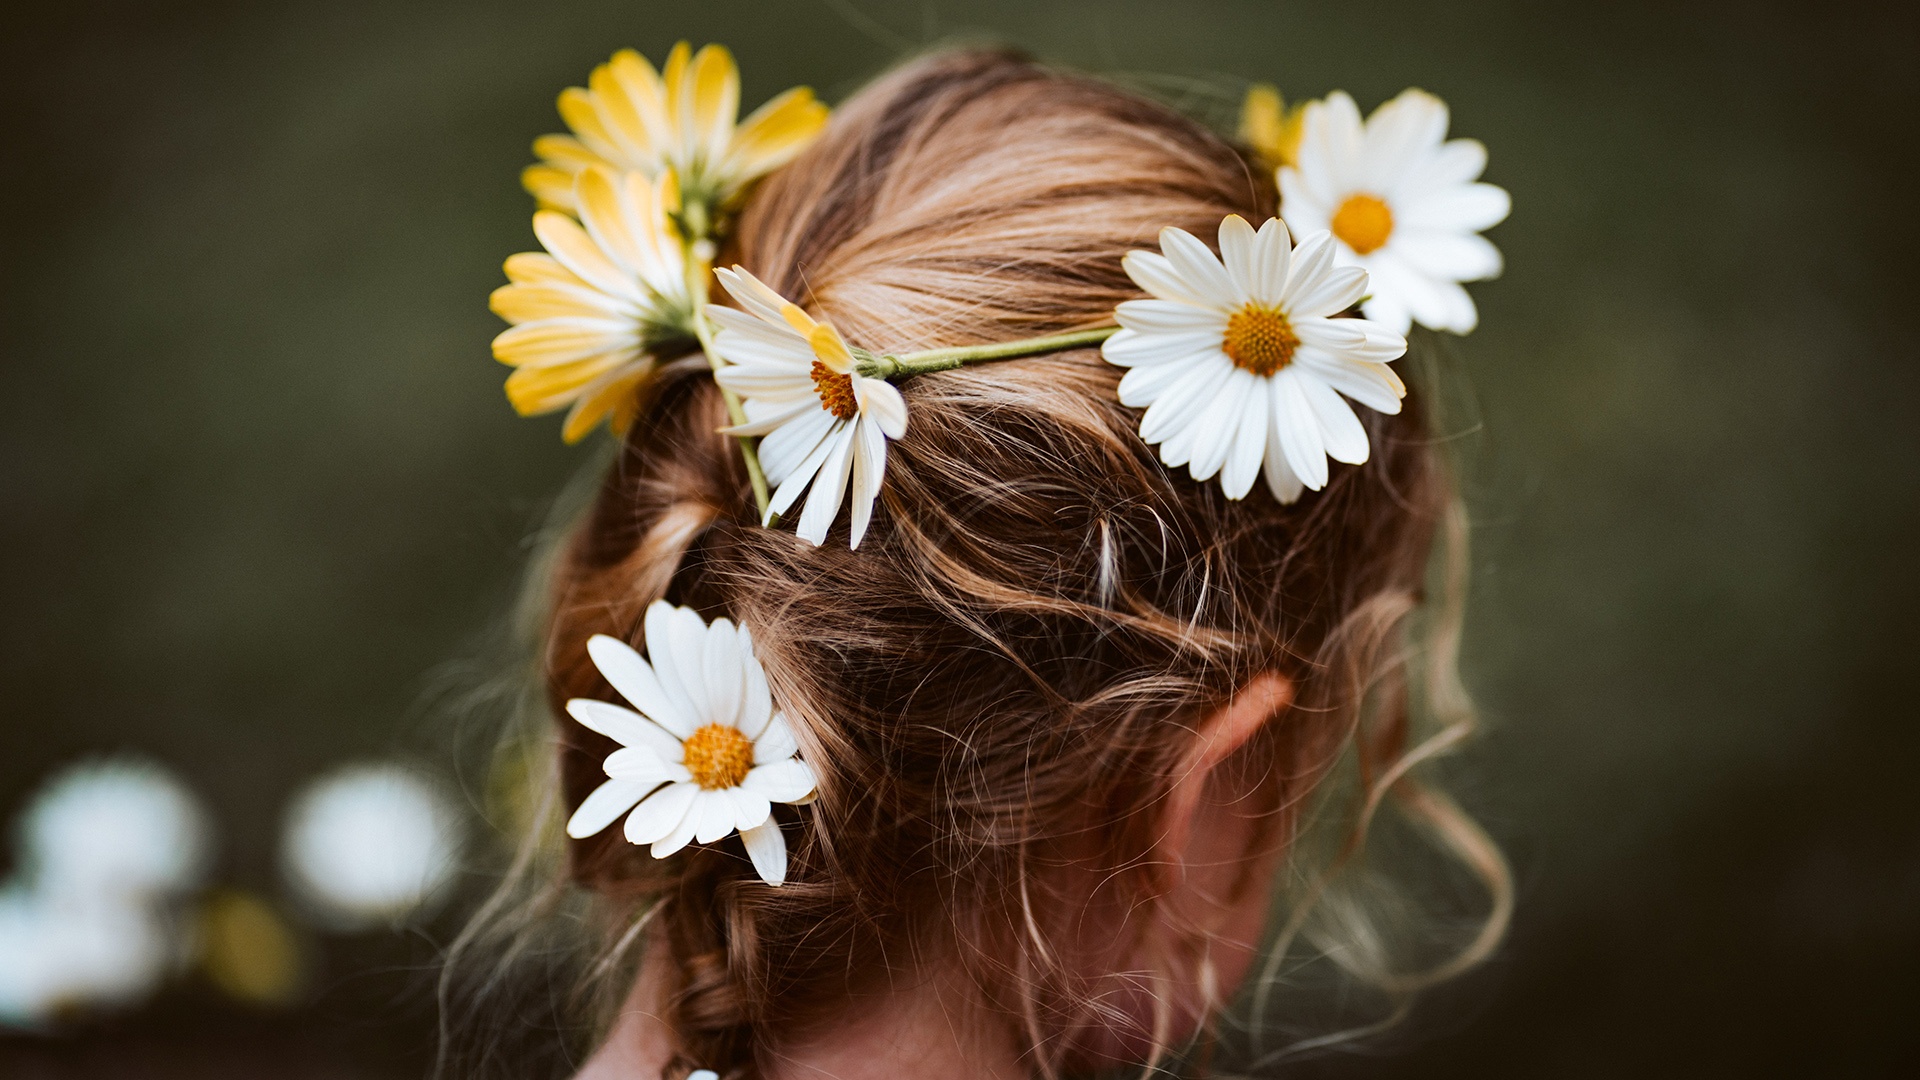 Kind mit Blumenkranz in den Haaren